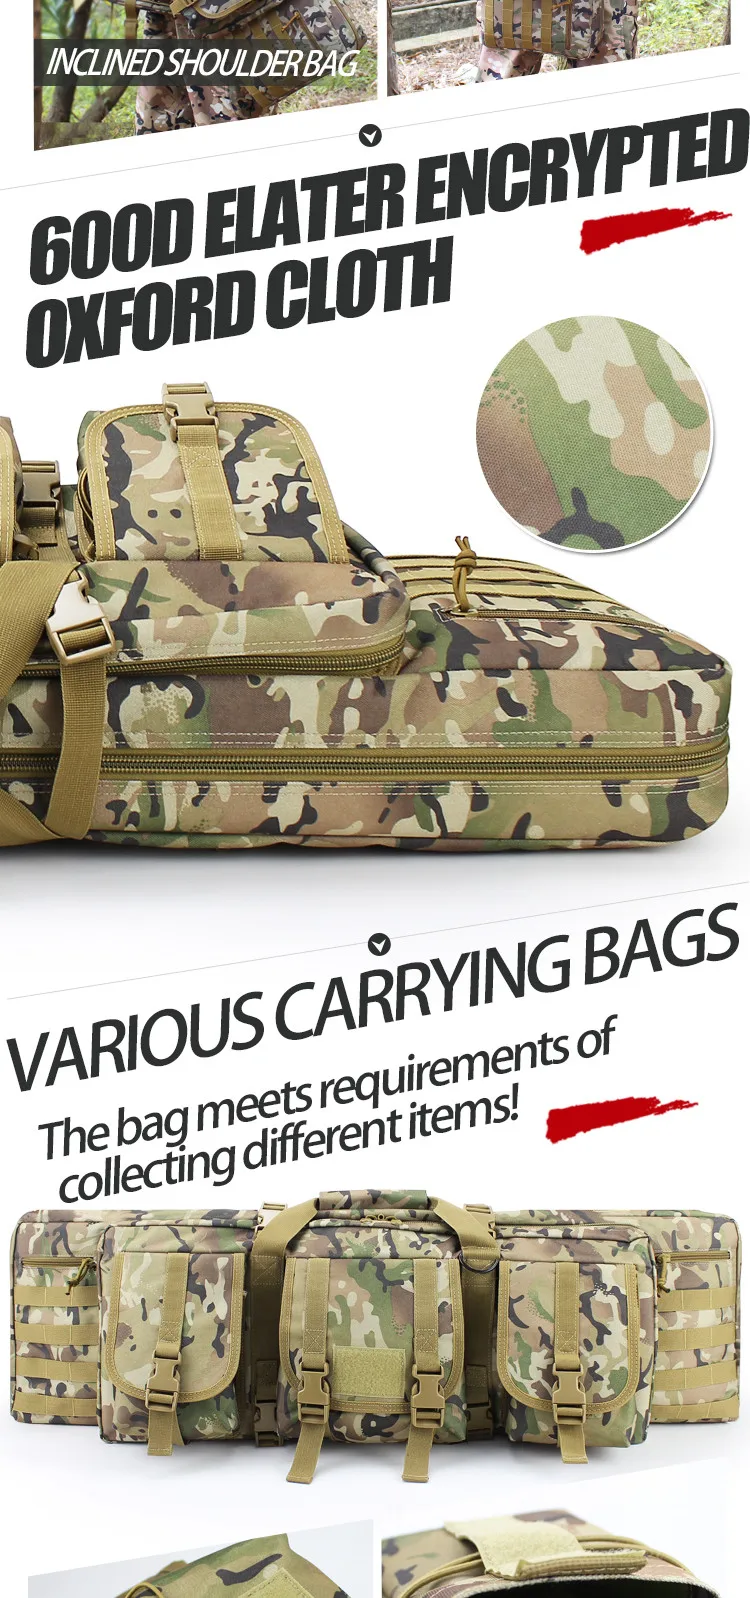 52 дюймовые военные охотничьи спортивные сумки 600D Oxford двойная Функциональная сумка армейский CS пистолет винтовка сумка для воздушного диапазона рюкзак сумка